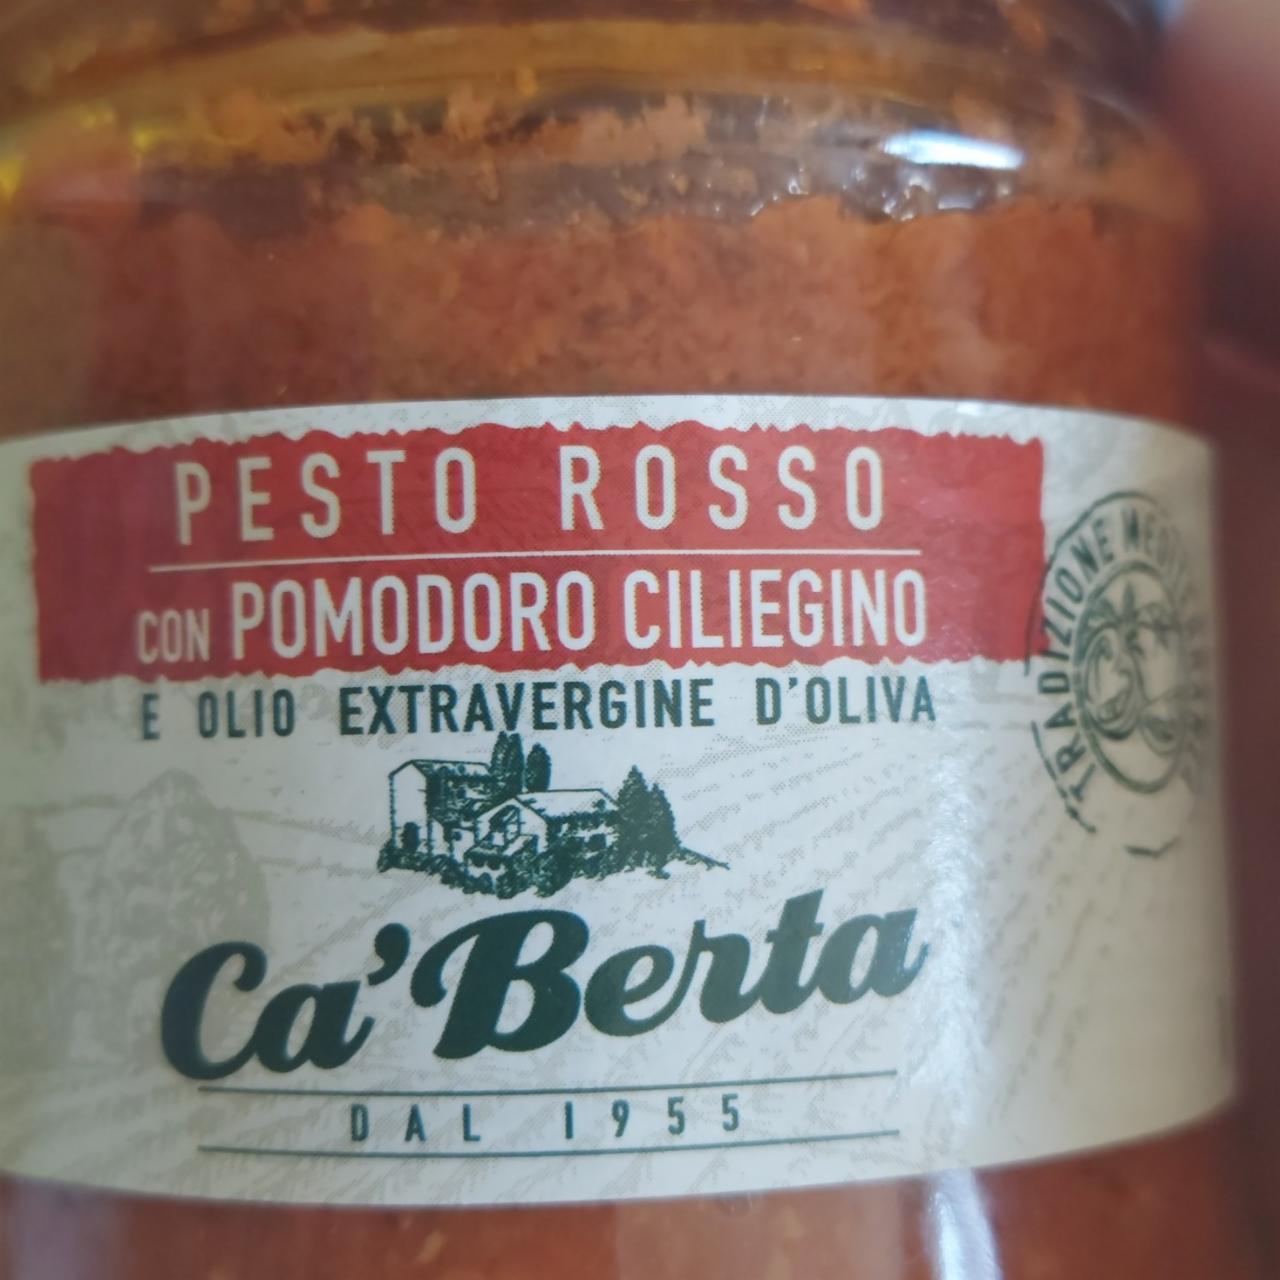 Zdjęcia - Pesto rosso con pomodoro ciliegino Ca'Berta